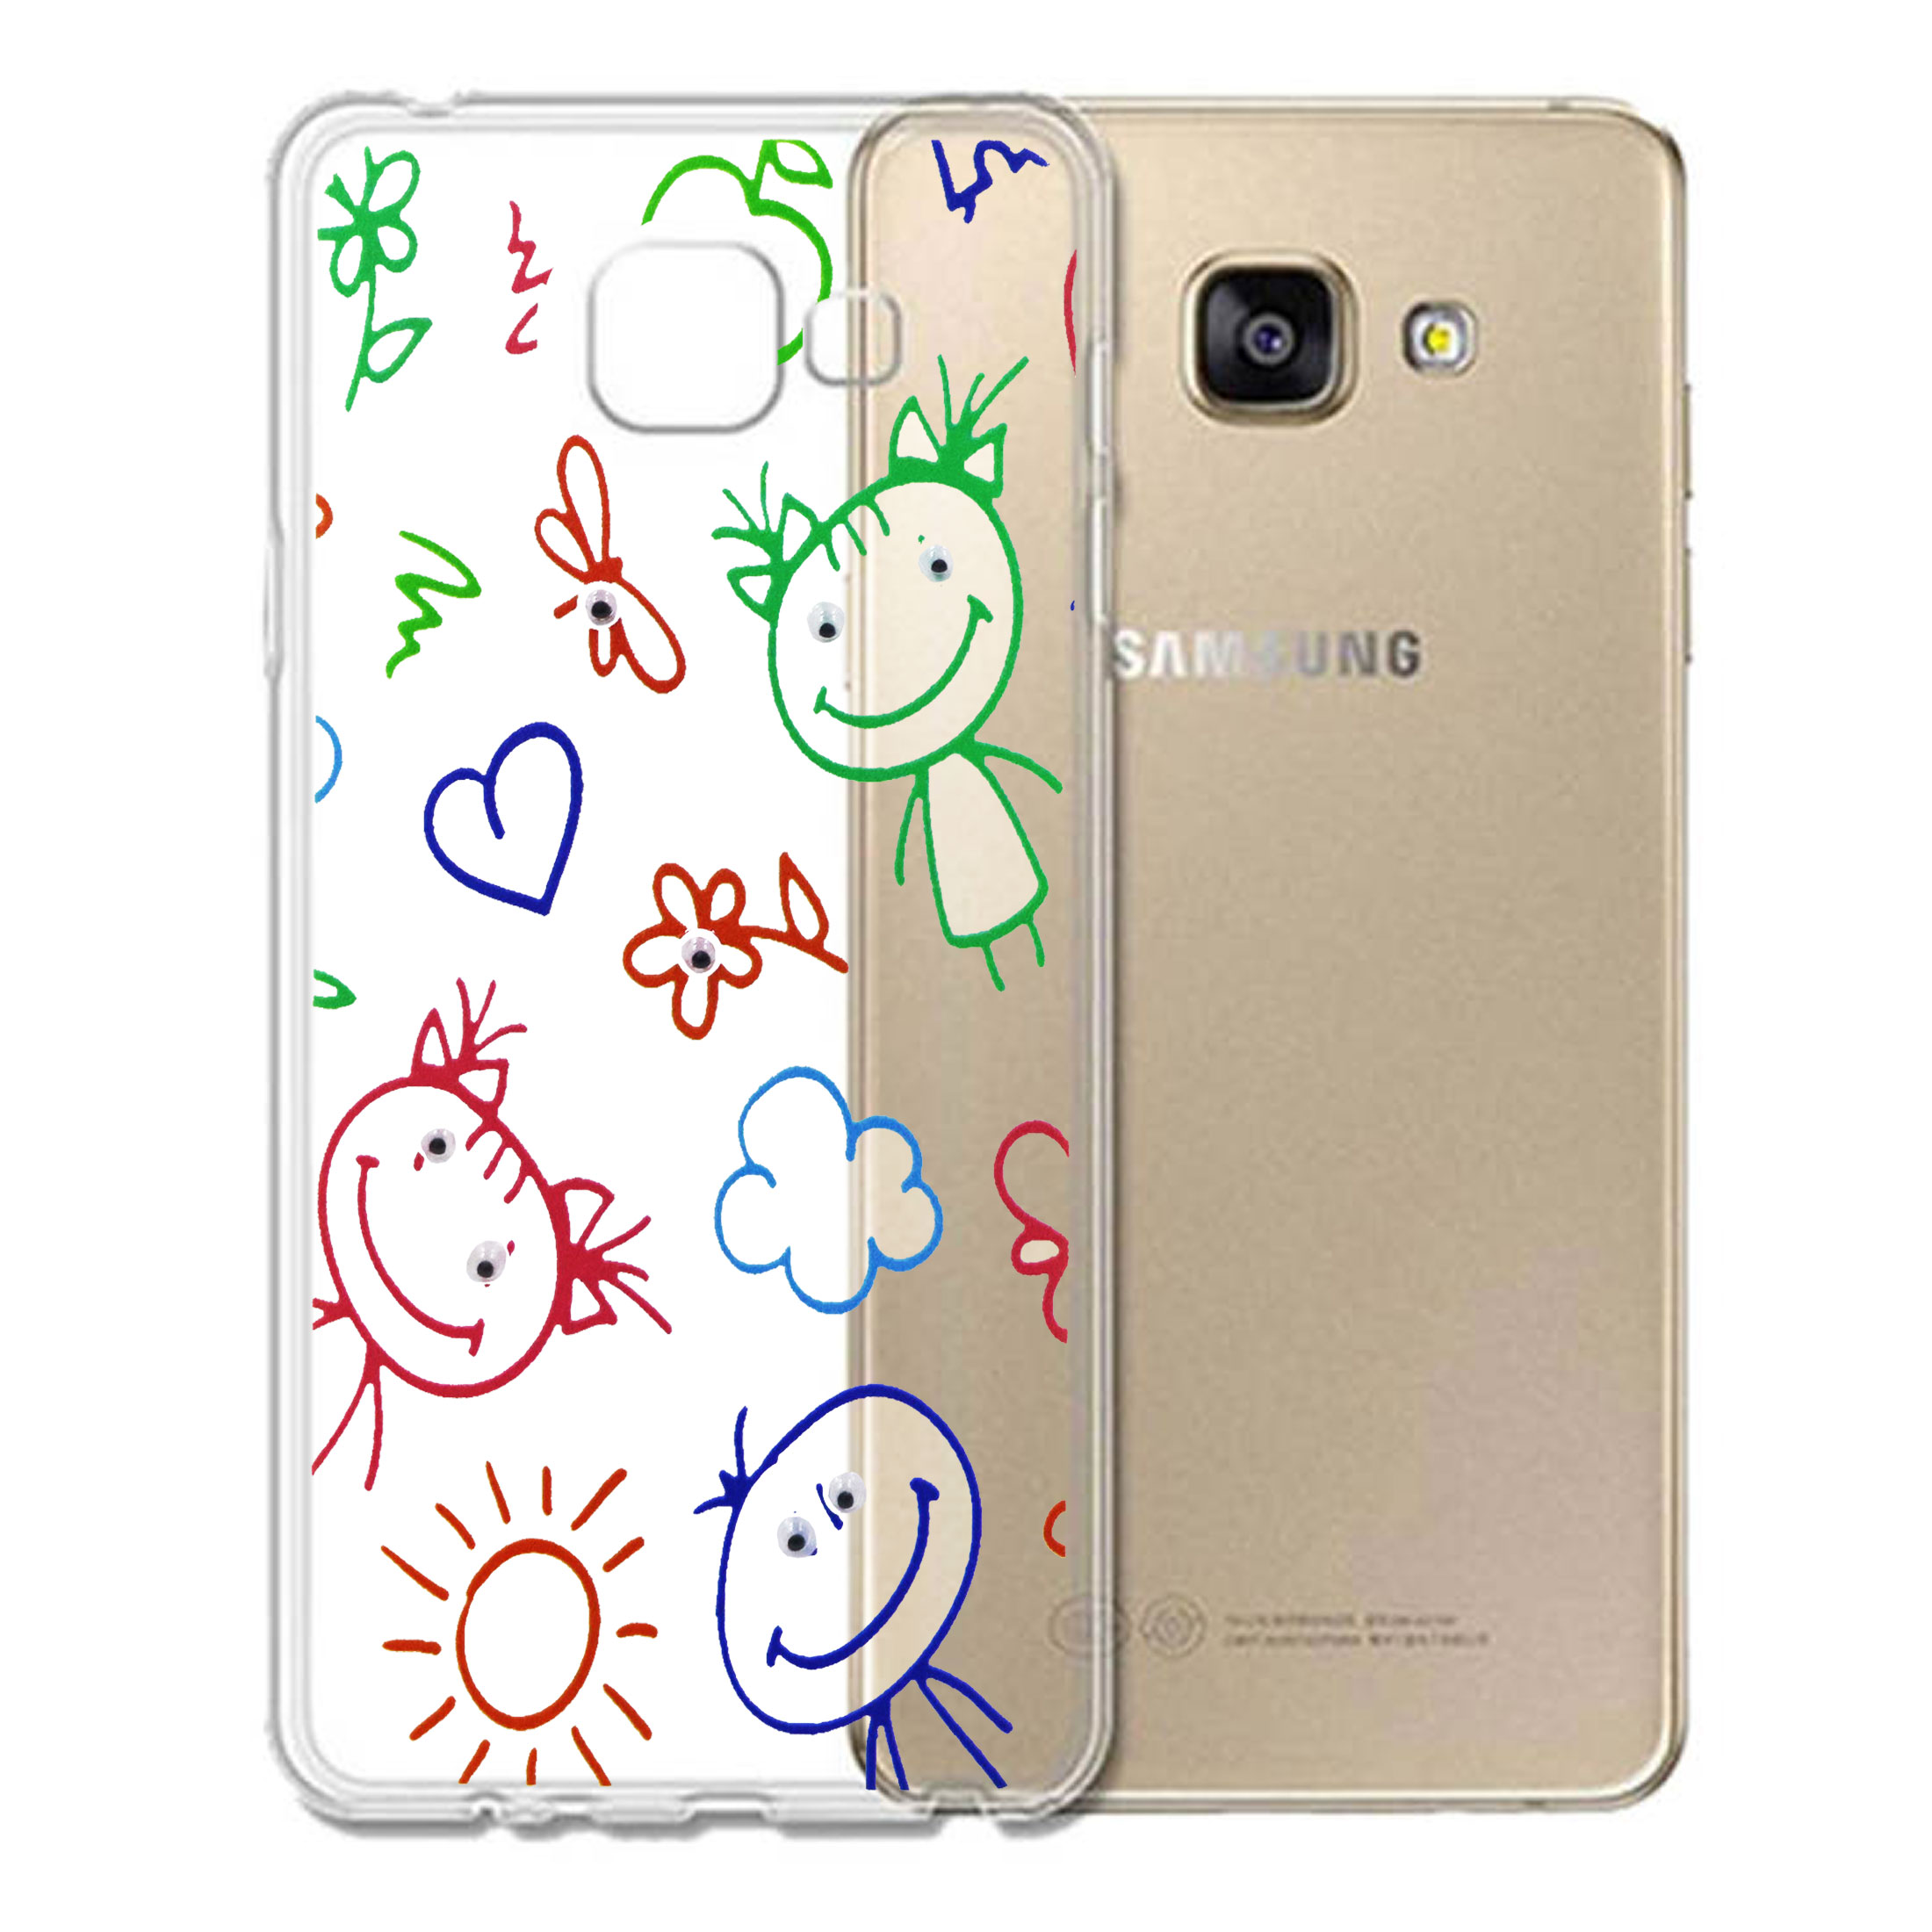 کاور طرح نقاشی مدل CLR-099 مناسب برای گوشی موبایل سامسونگ Galaxy A 320 / A3 2017